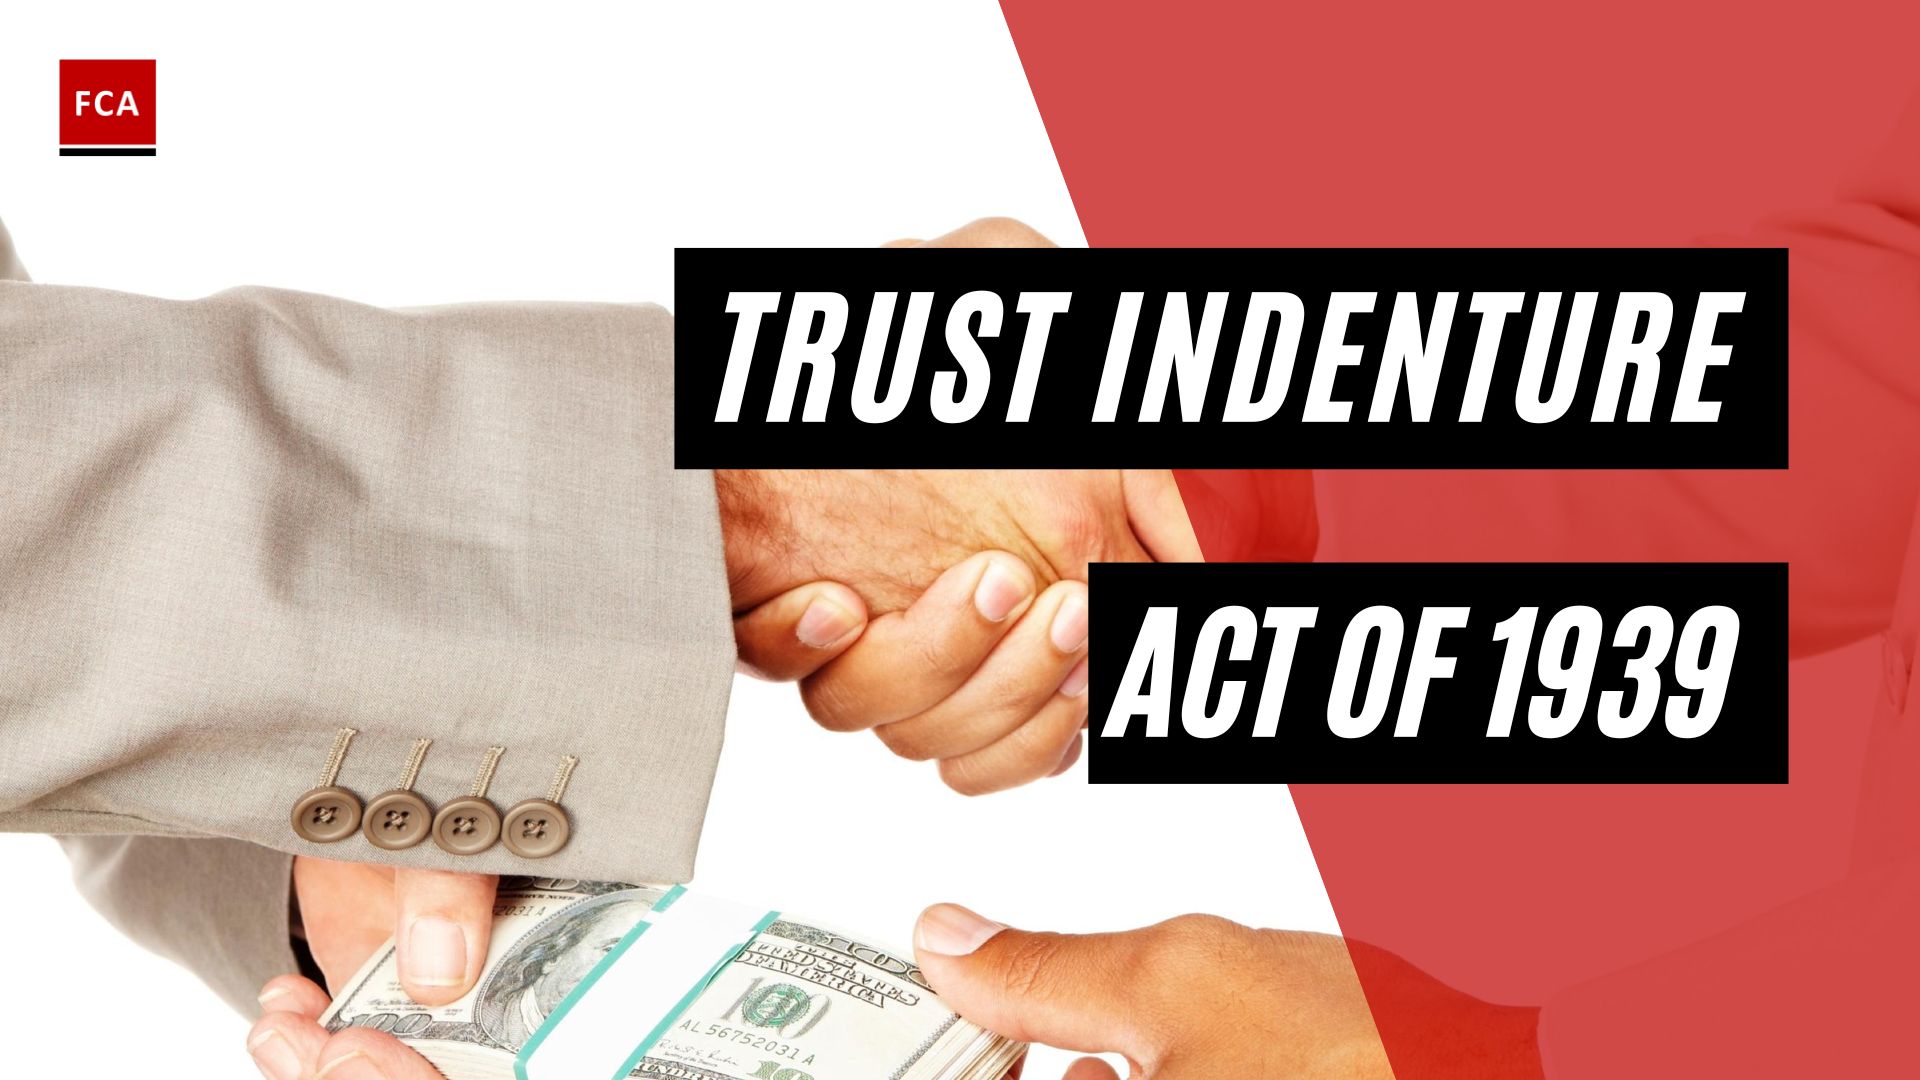 Trust Indenture Act Of 1939